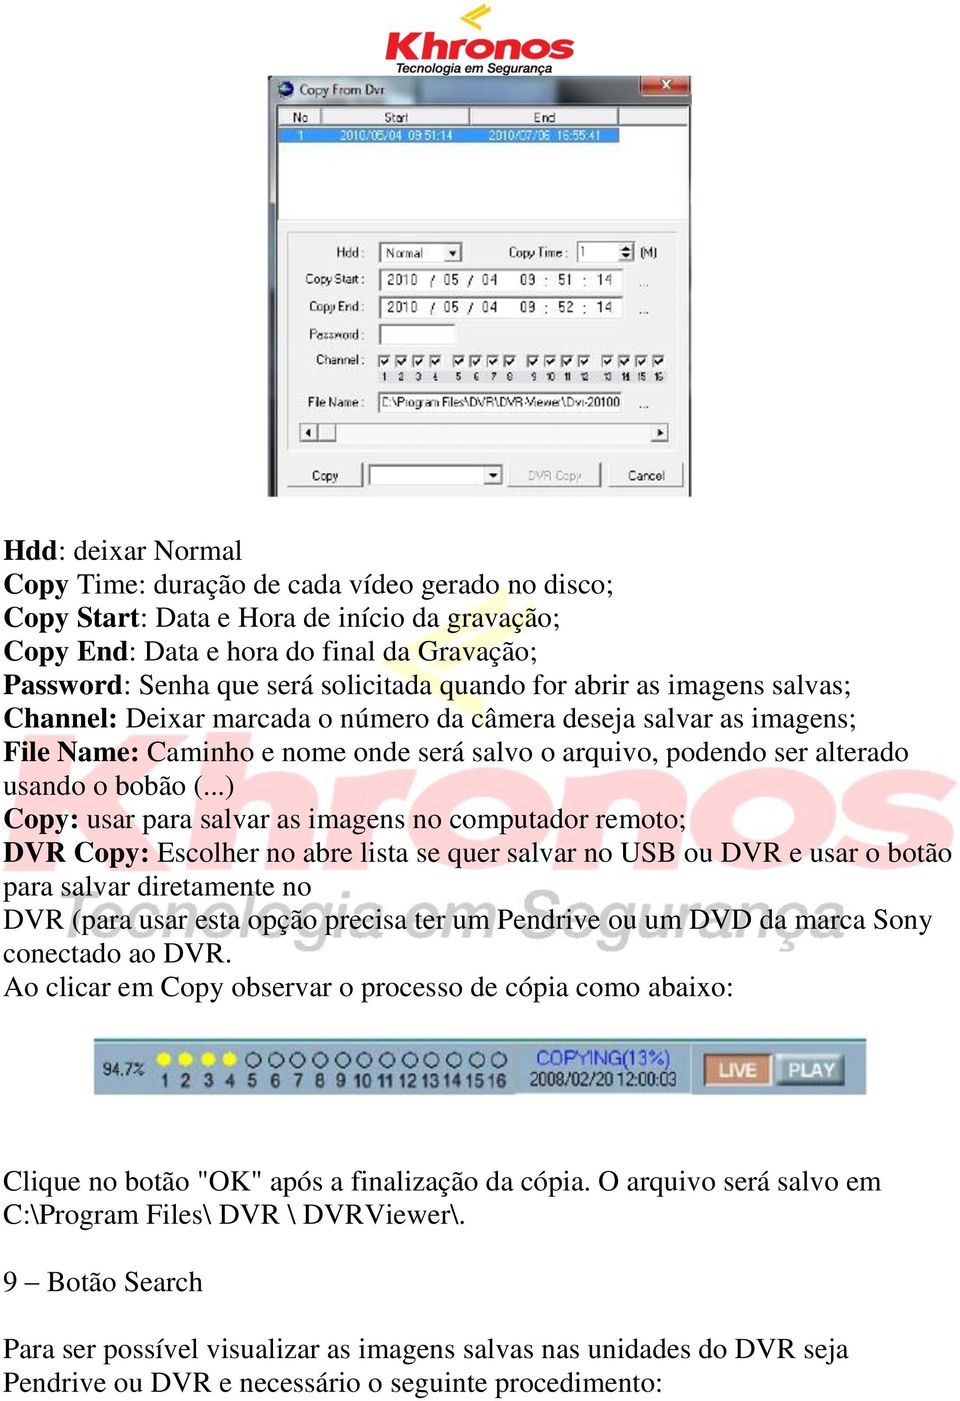 ..) Copy: usar para salvar as imagens no computador remoto; DVR Copy: Escolher no abre lista se quer salvar no USB ou DVR e usar o botão para salvar diretamente no DVR (para usar esta opção precisa